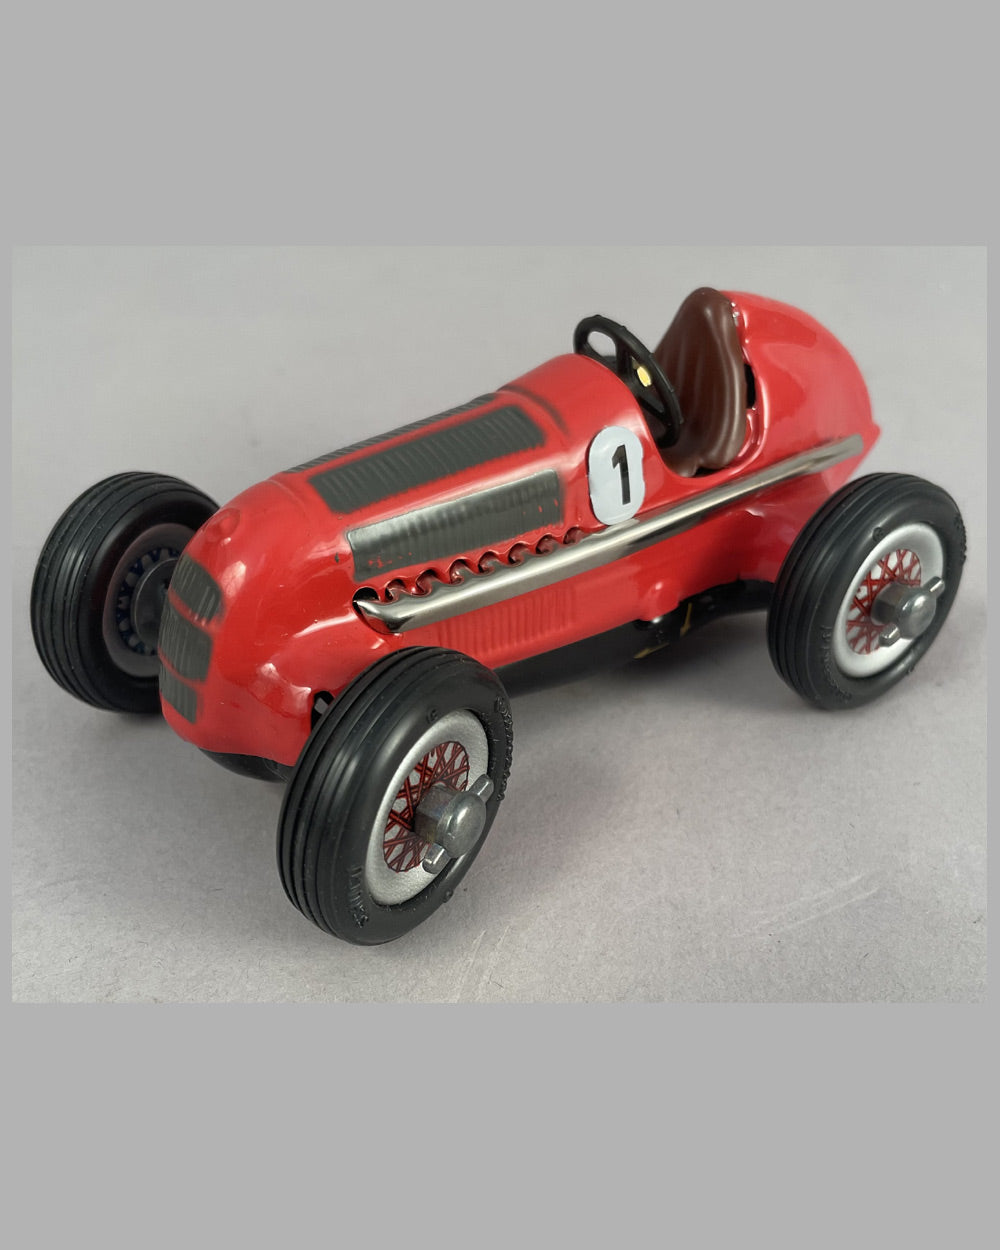 Schuco Auto Studio Mercedes Grand Prix 1936, silber, mit Schachtel